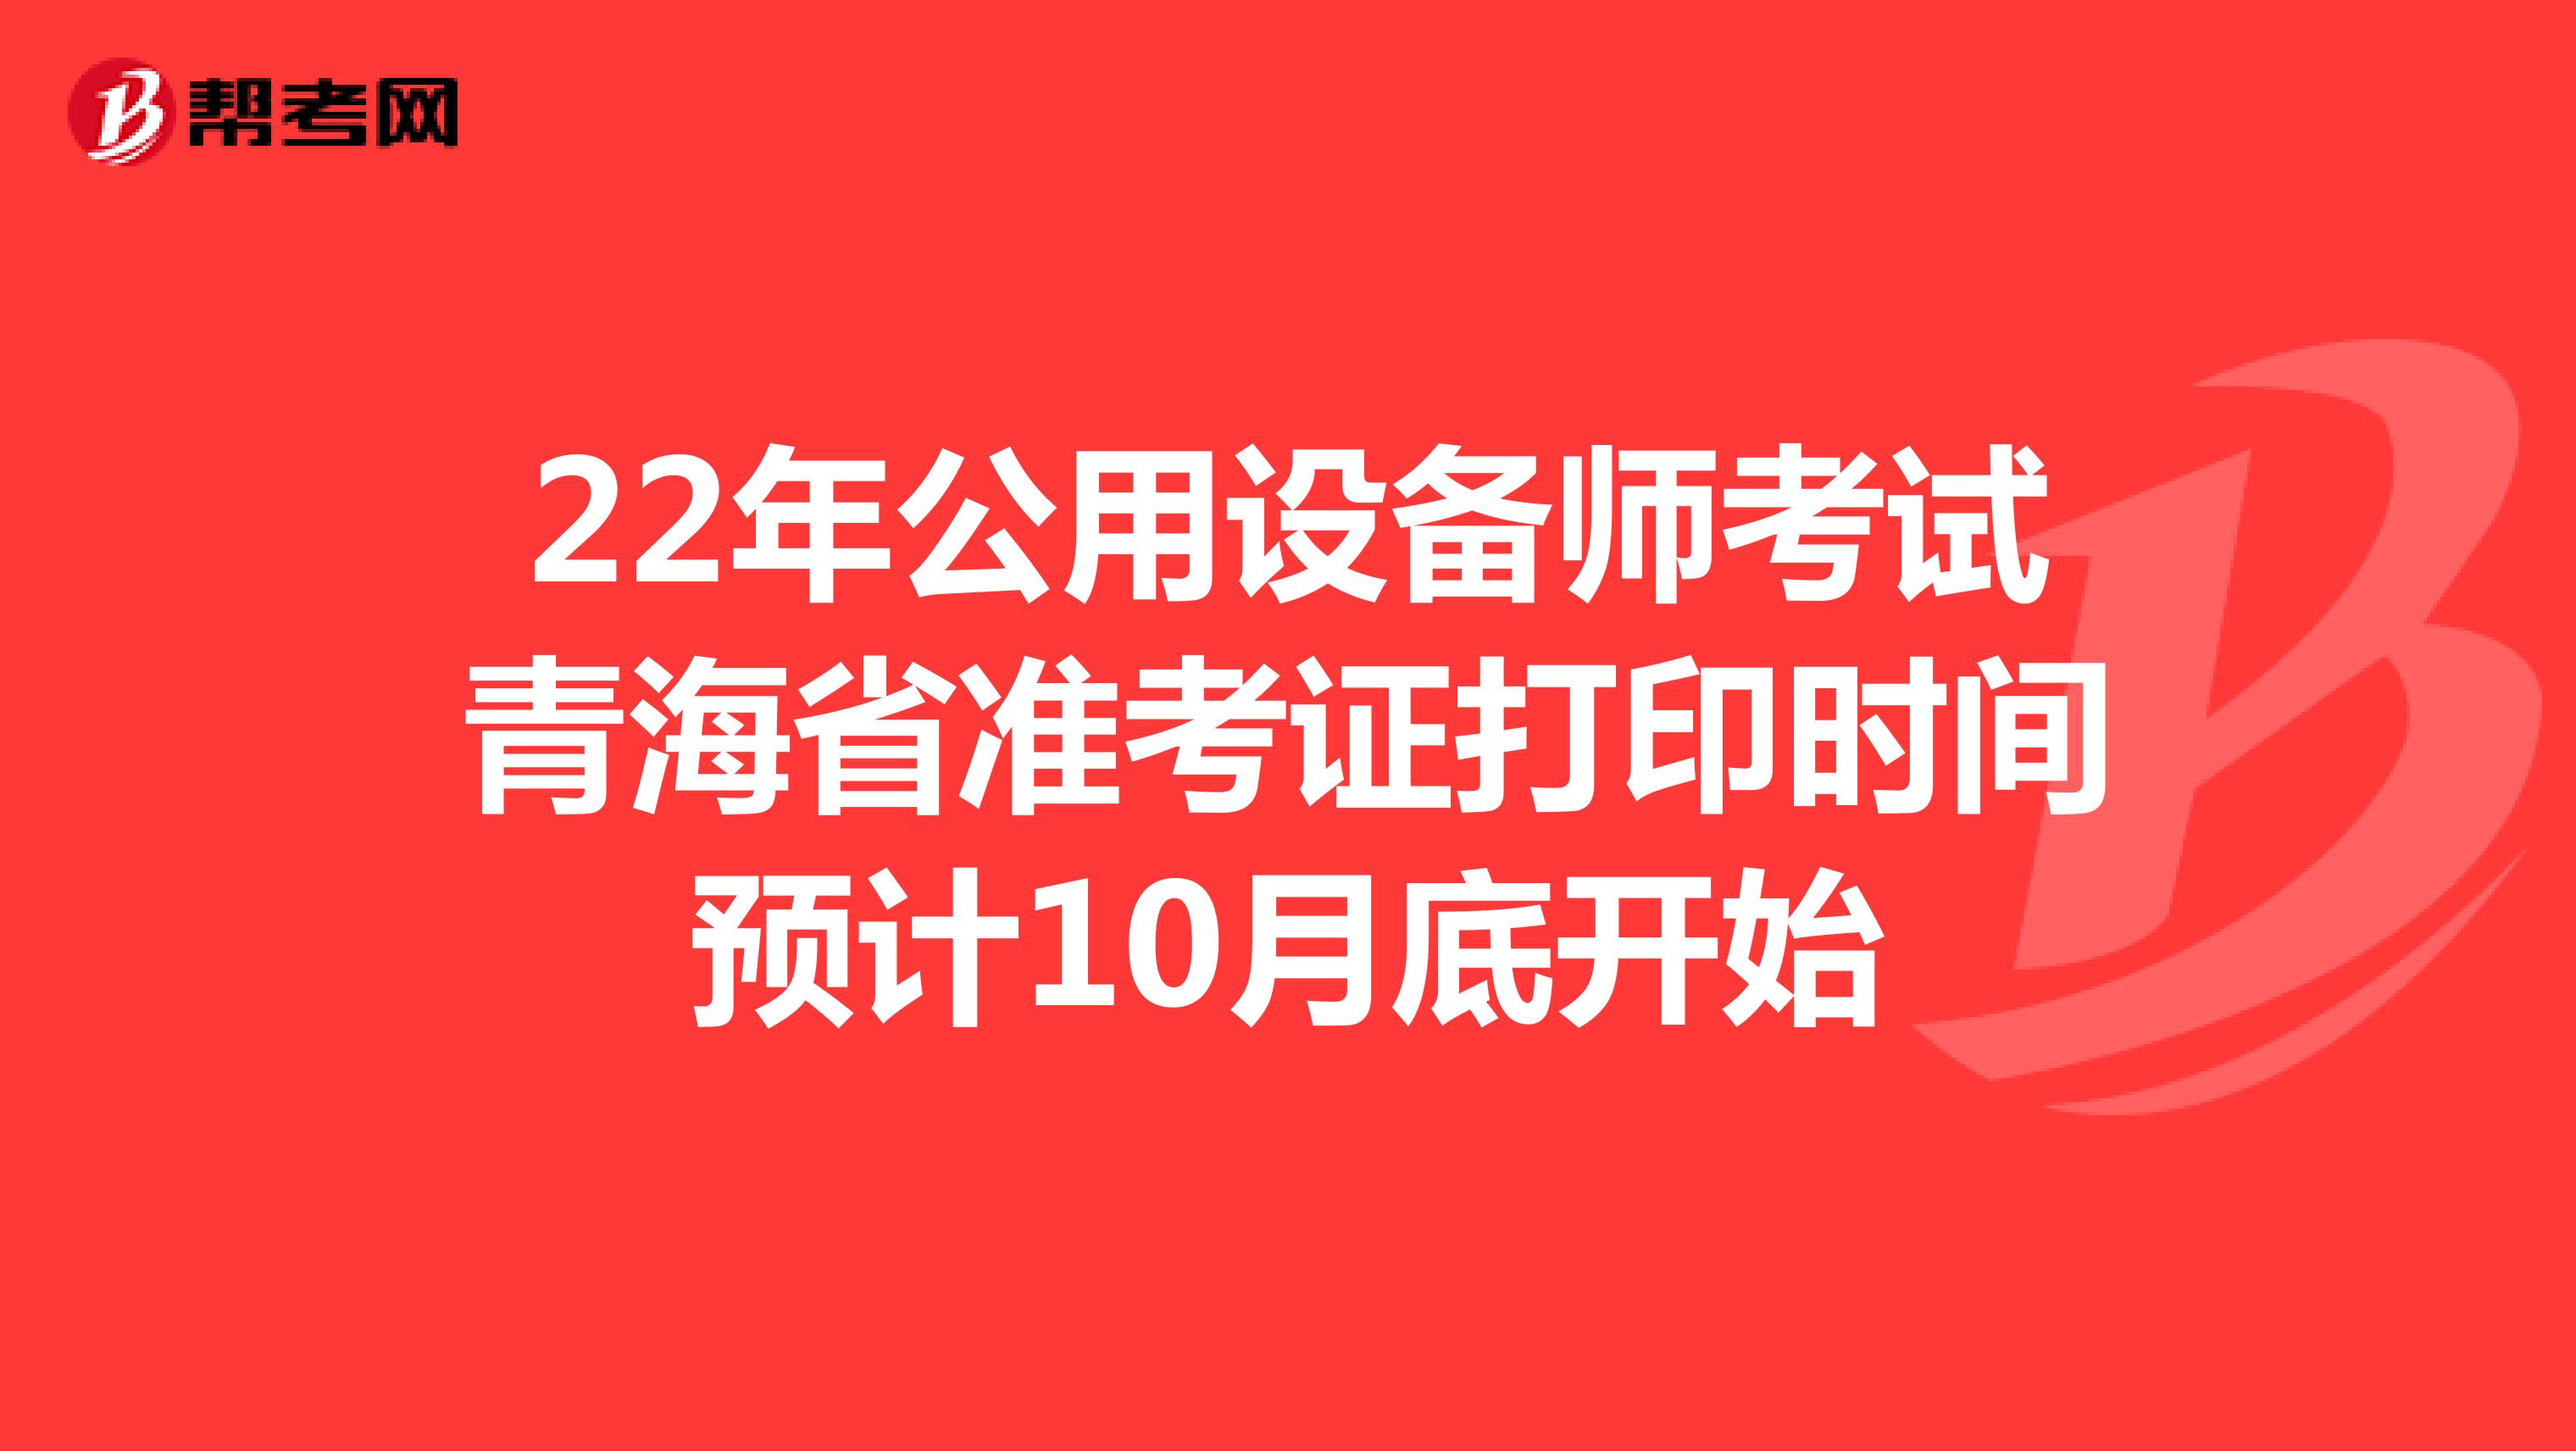 22年公用设备师考试青海省准考证打印时间预计10月底开始